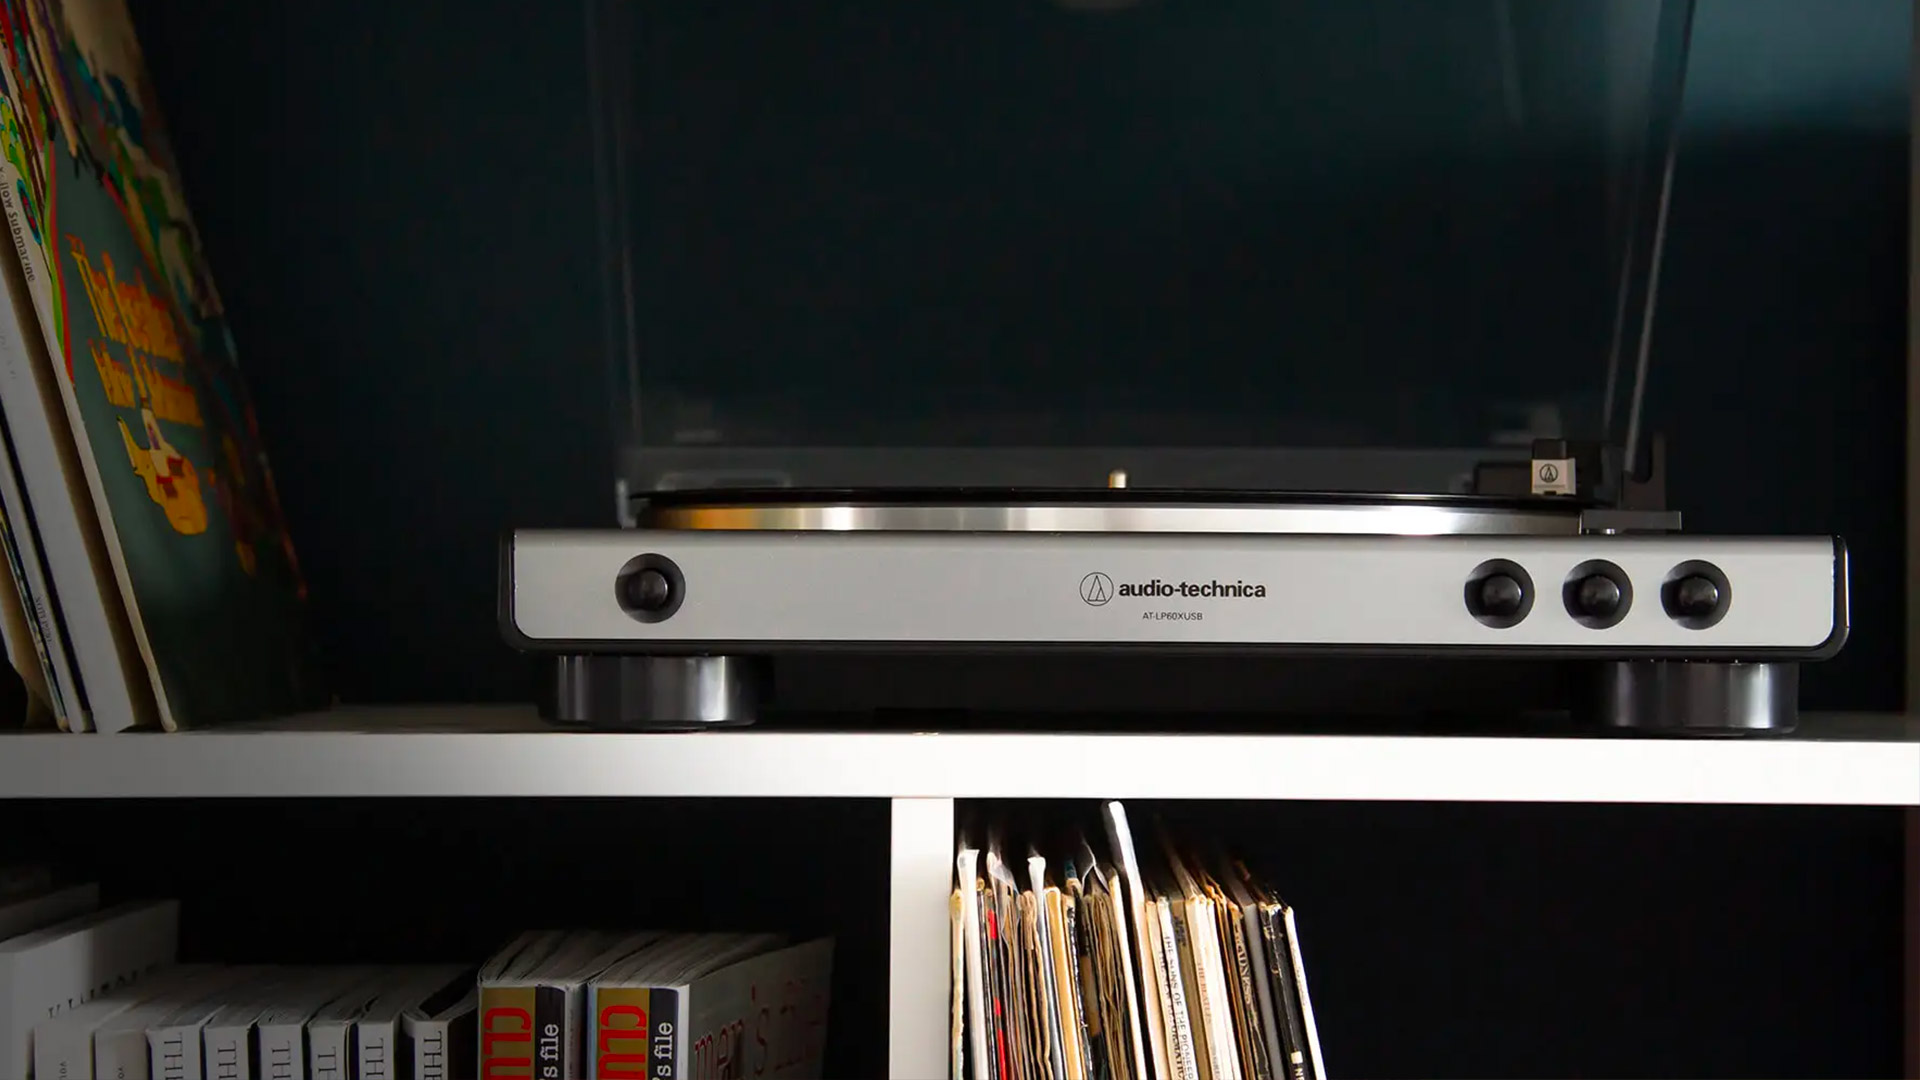 An Audio-Technica turntable on a bookshelf